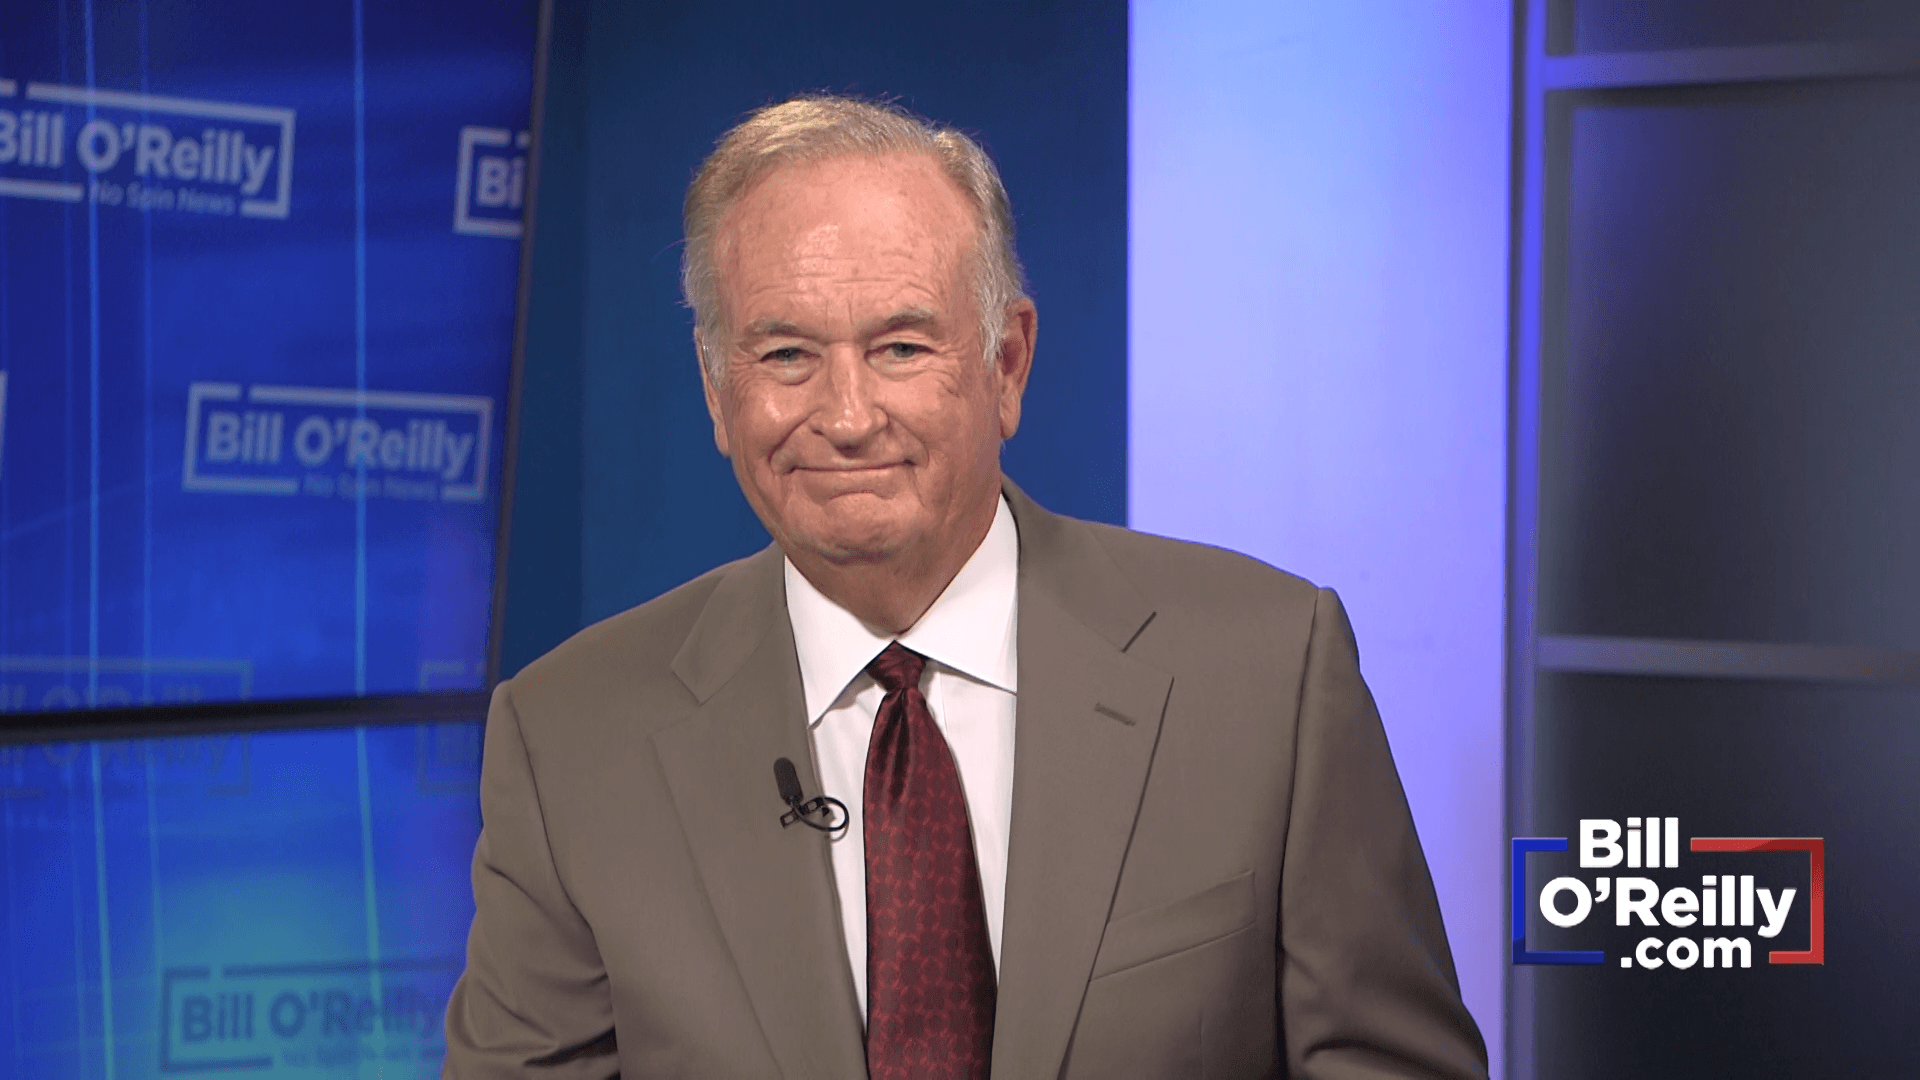 Bill O'Reilly: Video Center Spin News Excerpt 2018